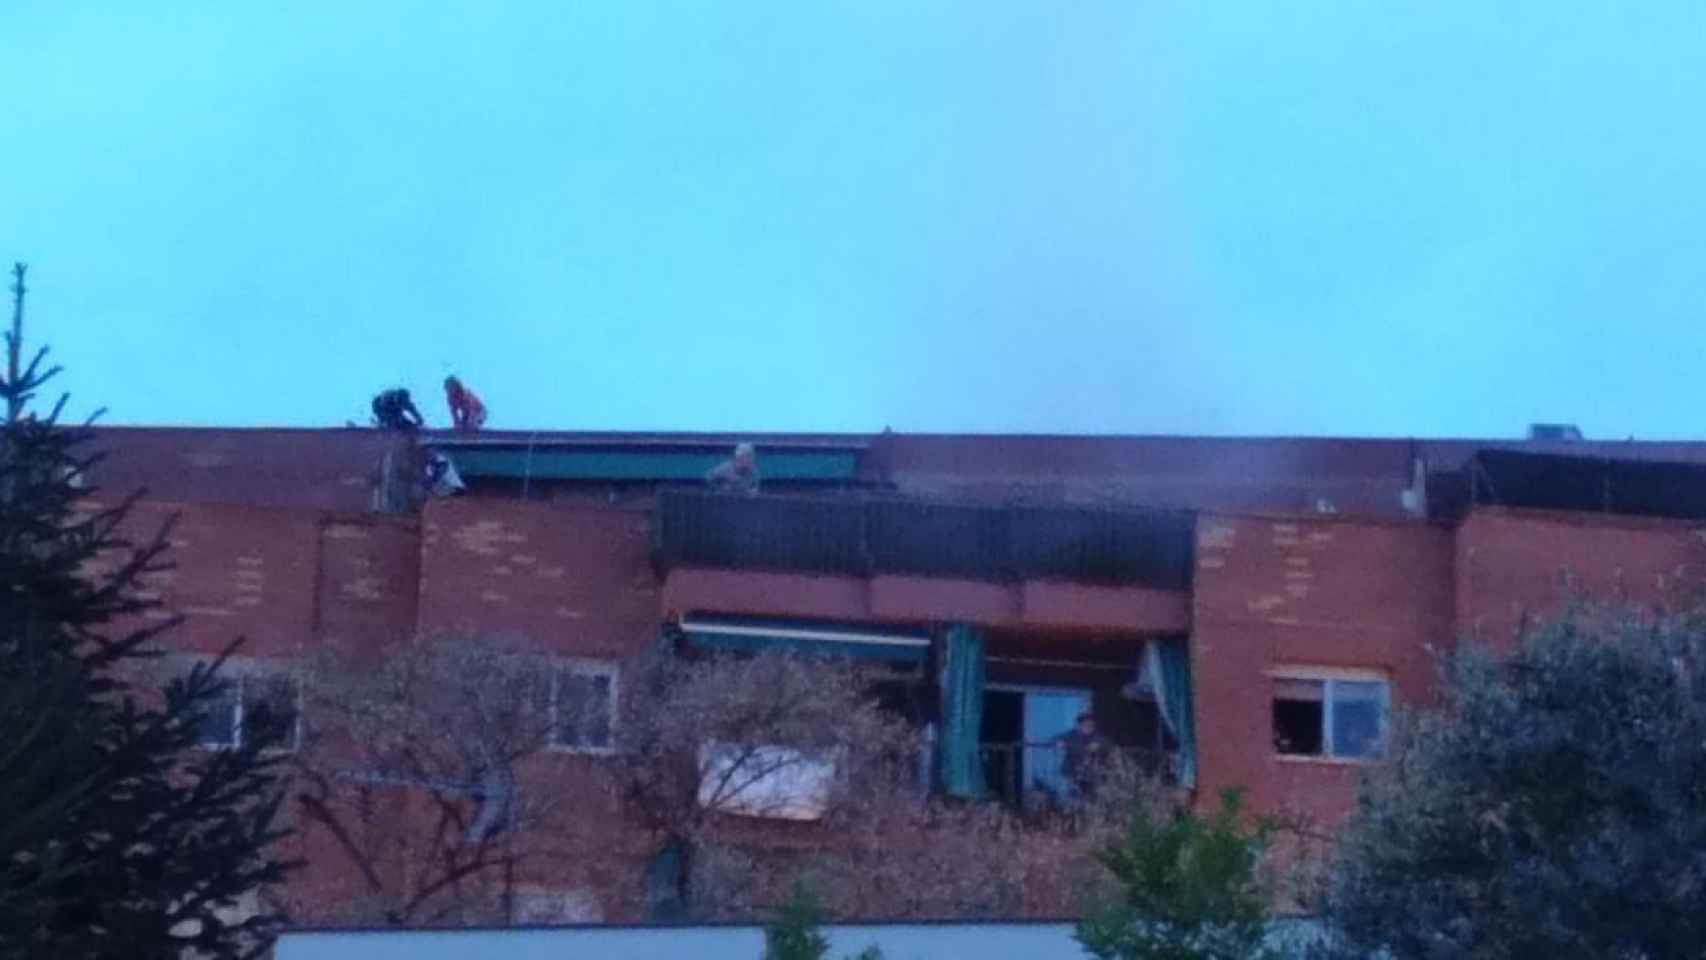 Afectados por el incendio de Santa Coloma en la azotea y descendiendo por la fachada del edificio para salvarse de las llamas / M.A.